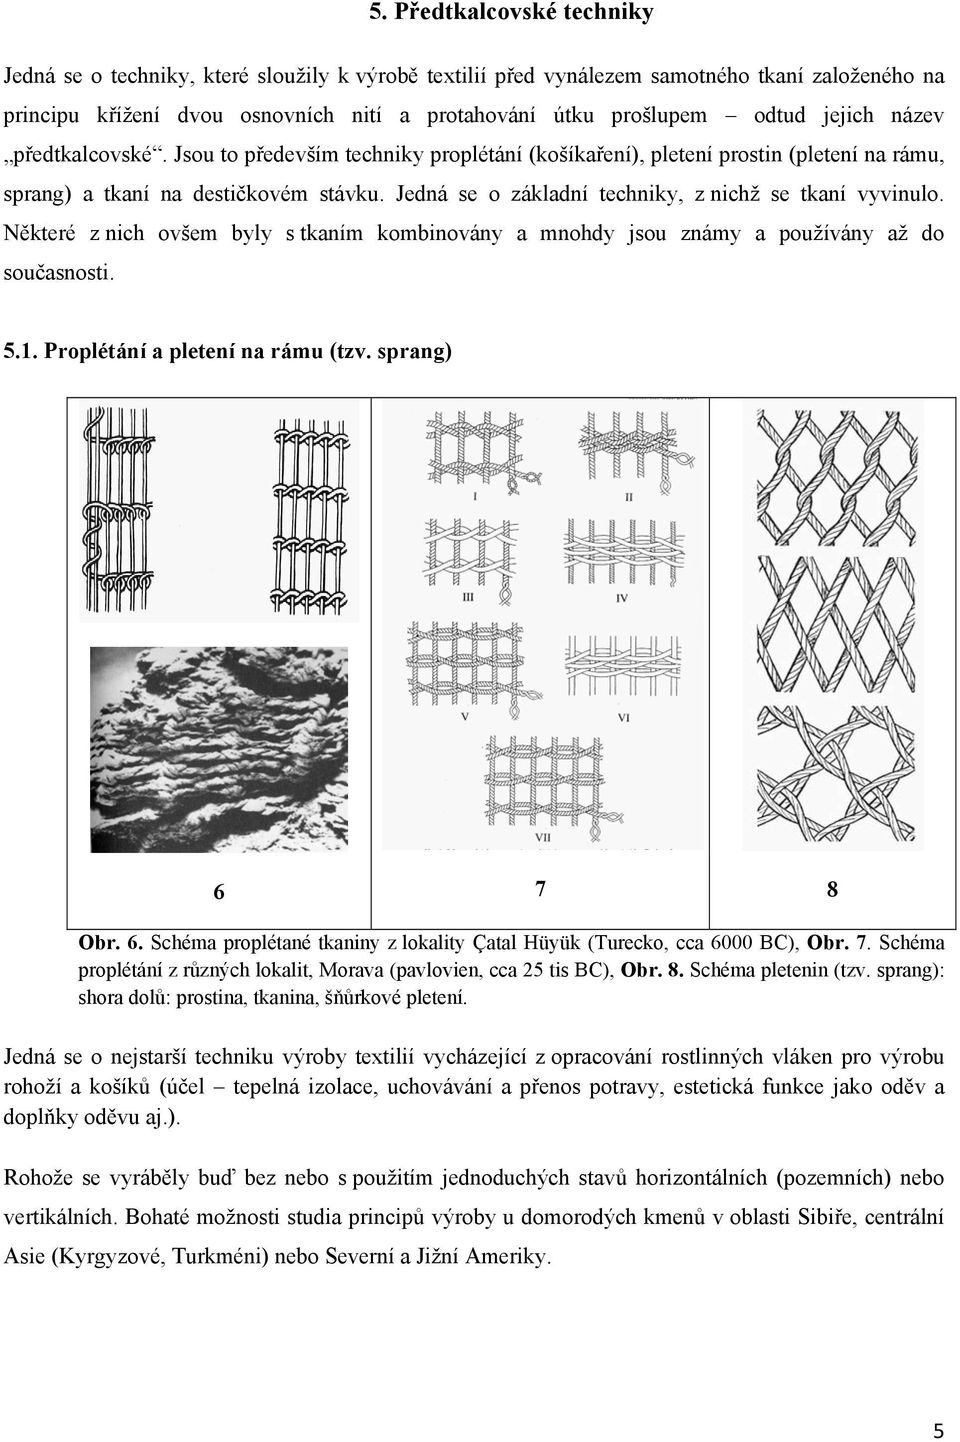 Jedná se o základní techniky, z nichž se tkaní vyvinulo. Některé z nich ovšem byly s tkaním kombinovány a mnohdy jsou známy a používány až do současnosti. 5.1. Proplétání a pletení na rámu (tzv.